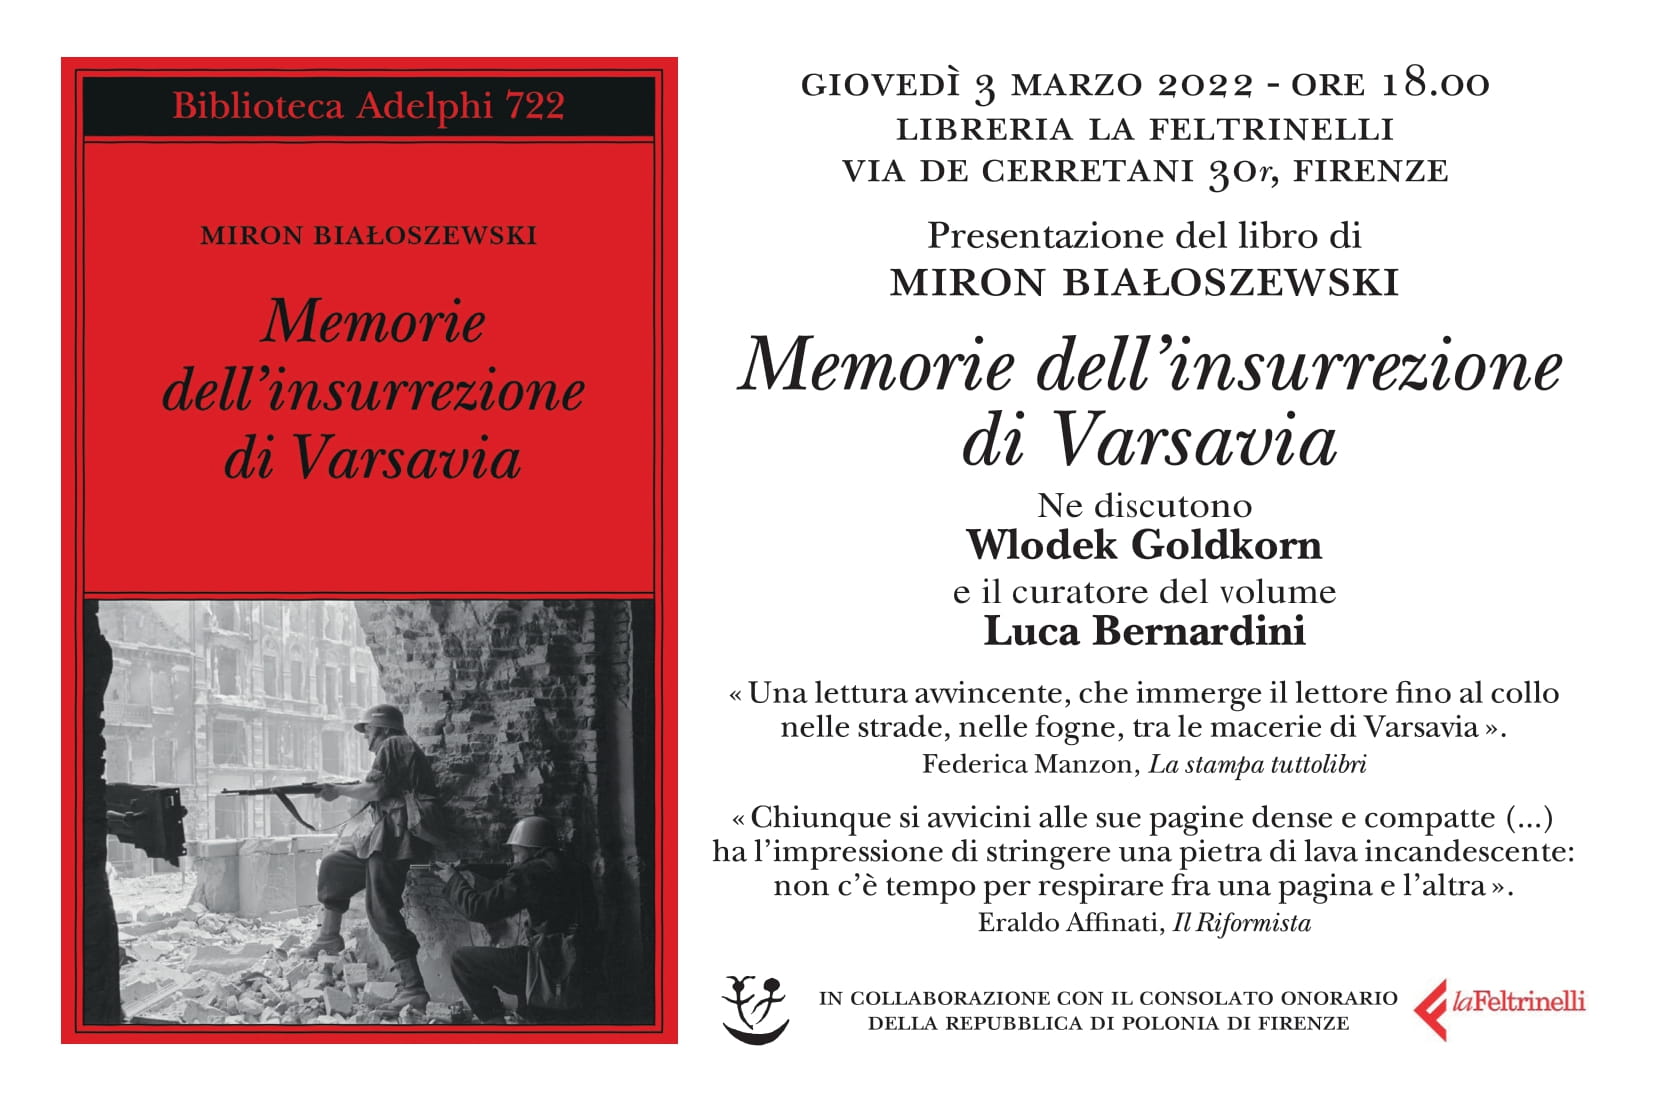 Firenze: Presentazione del libro di Miron Białoszewski “Memorie dell’insurrezione di Varsavia”